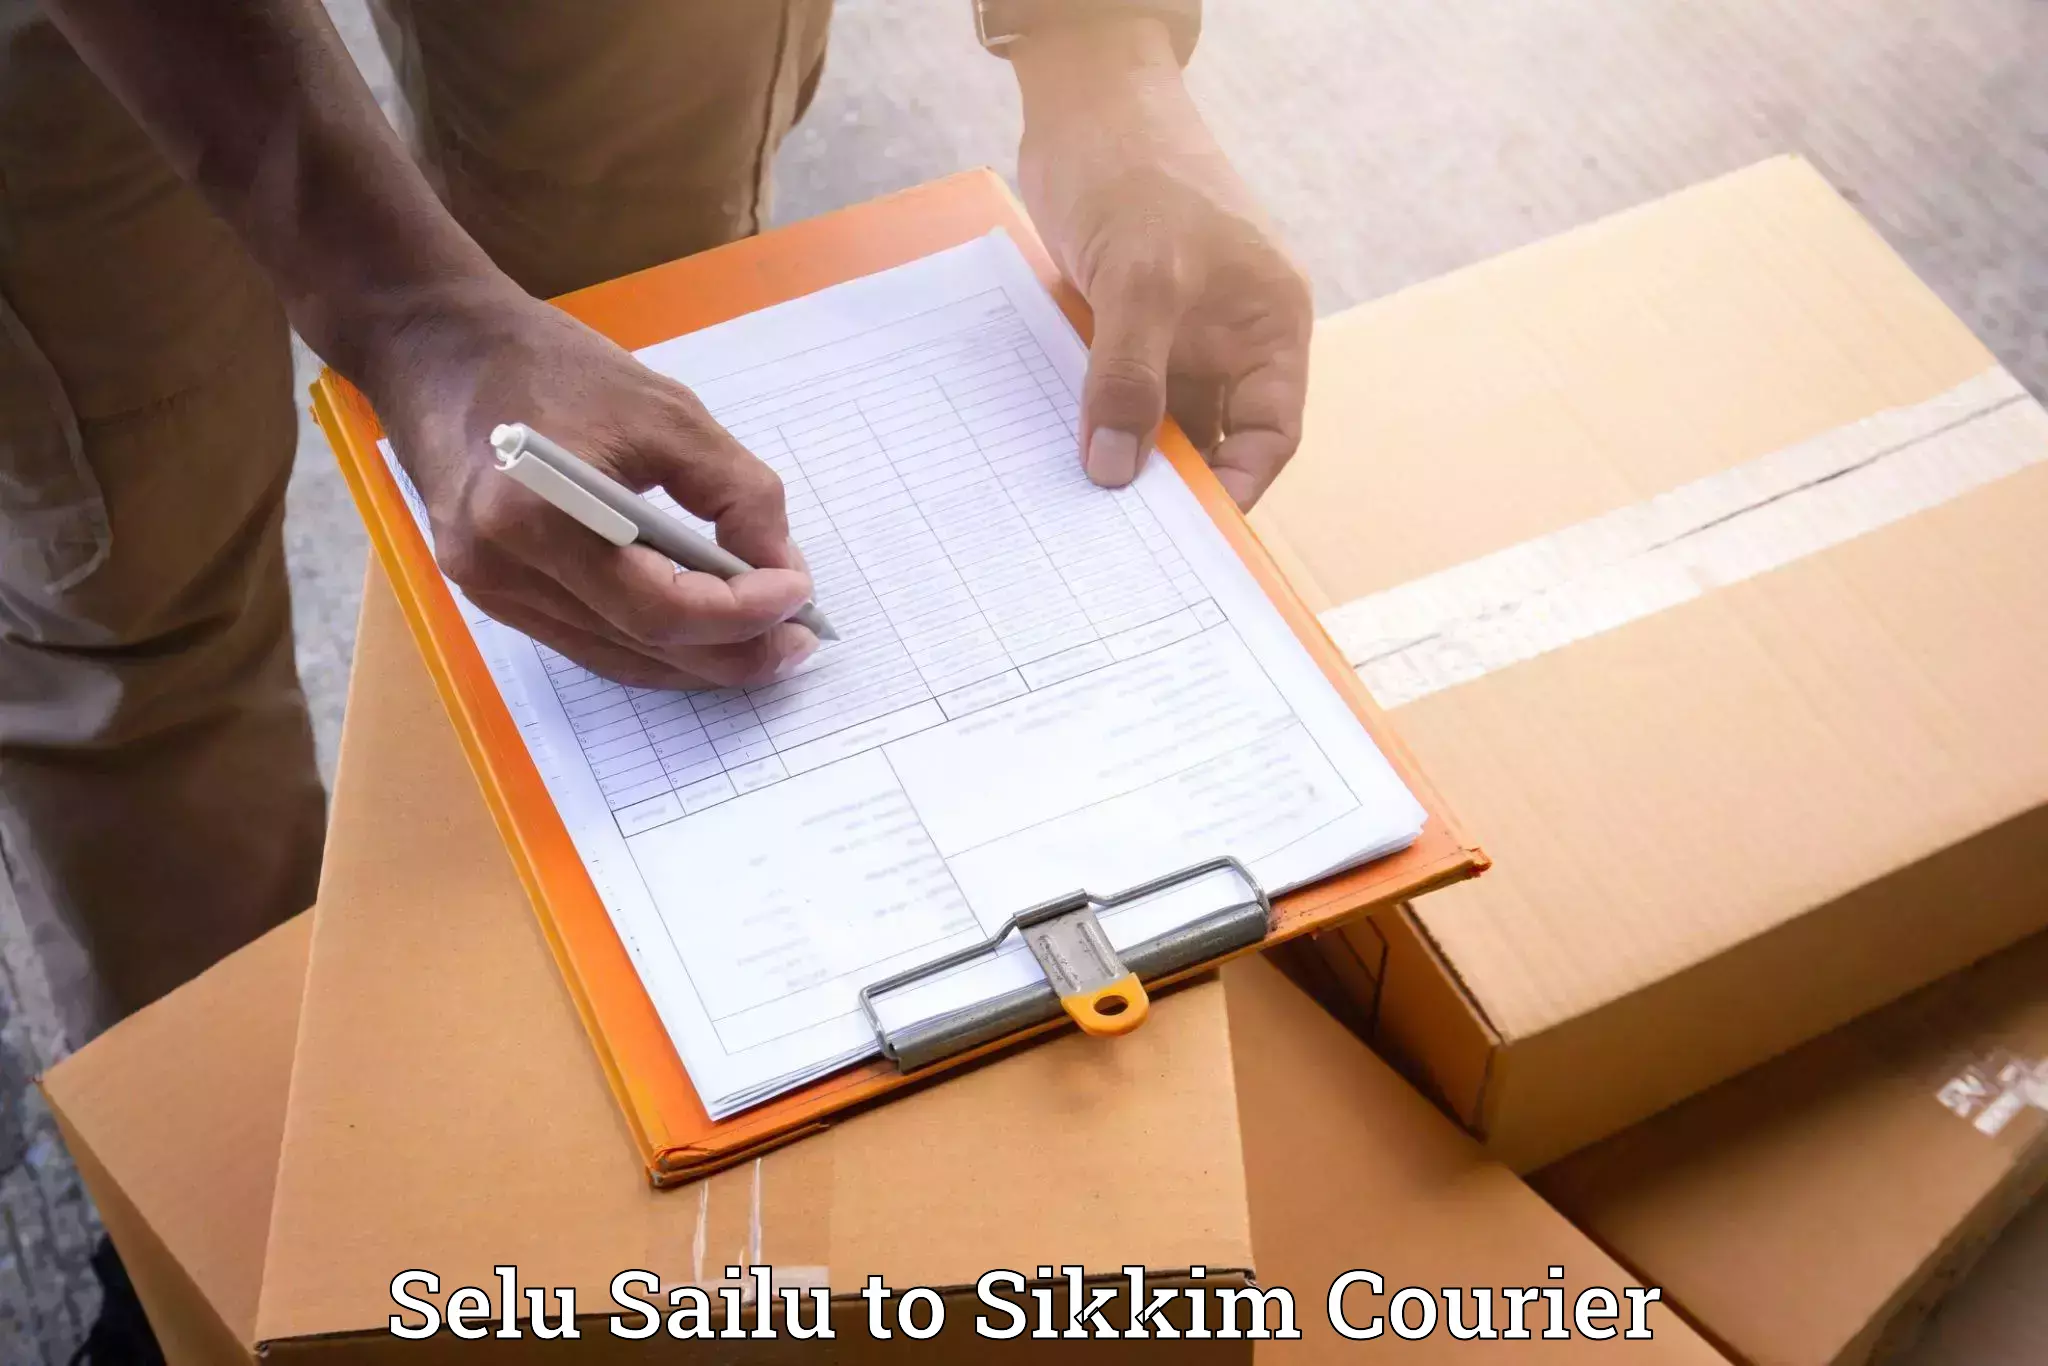 Full-service furniture transport in Selu Sailu to South Sikkim